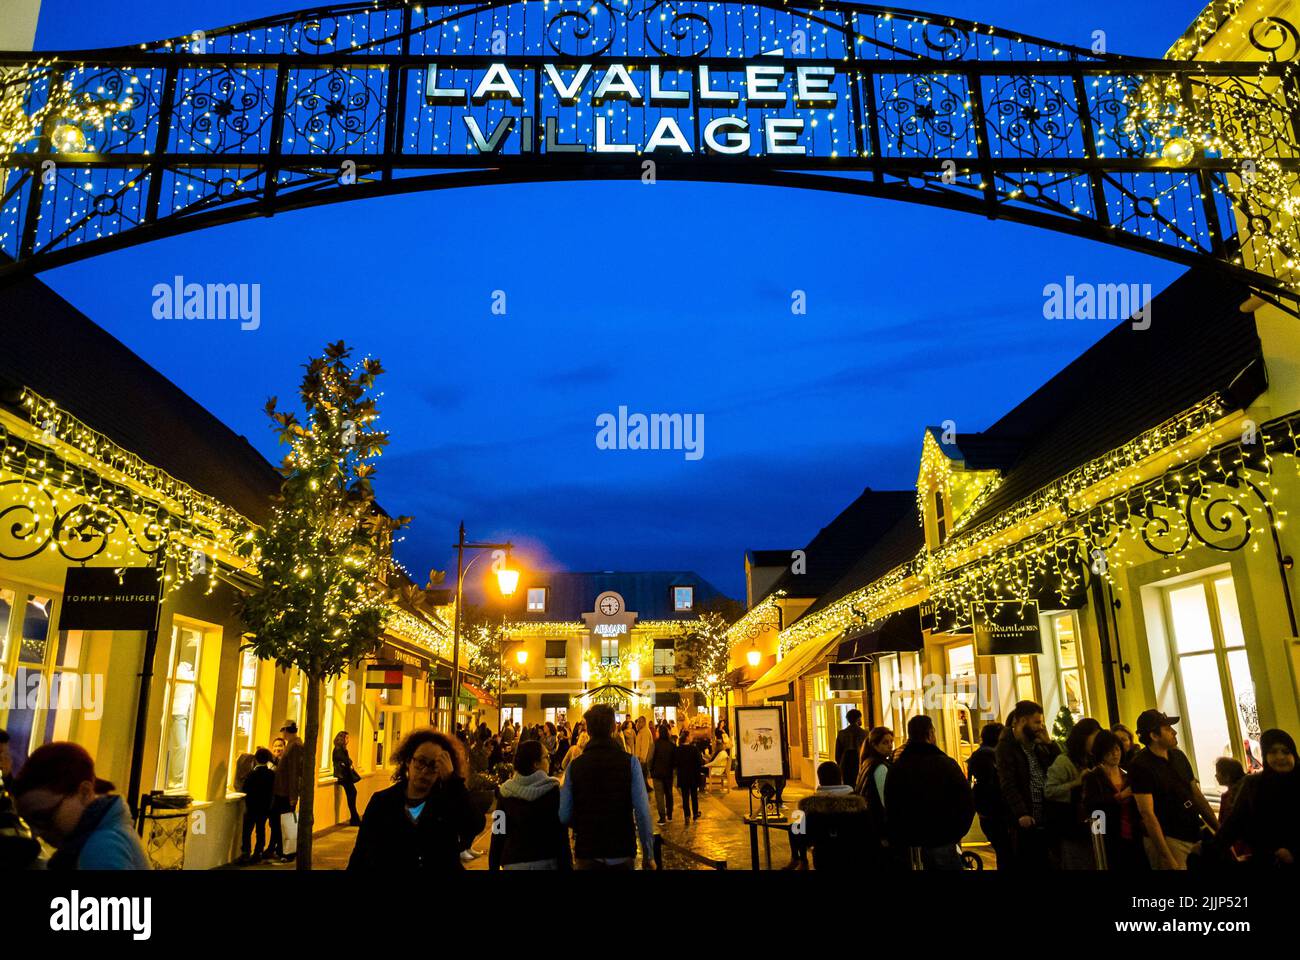 Serris, (París), Francia, Puerta exterior, Signo, Descuento en el centro comercial 'La Vallée Village' con multitud, luces nocturnas, escenas callejeras Foto de stock